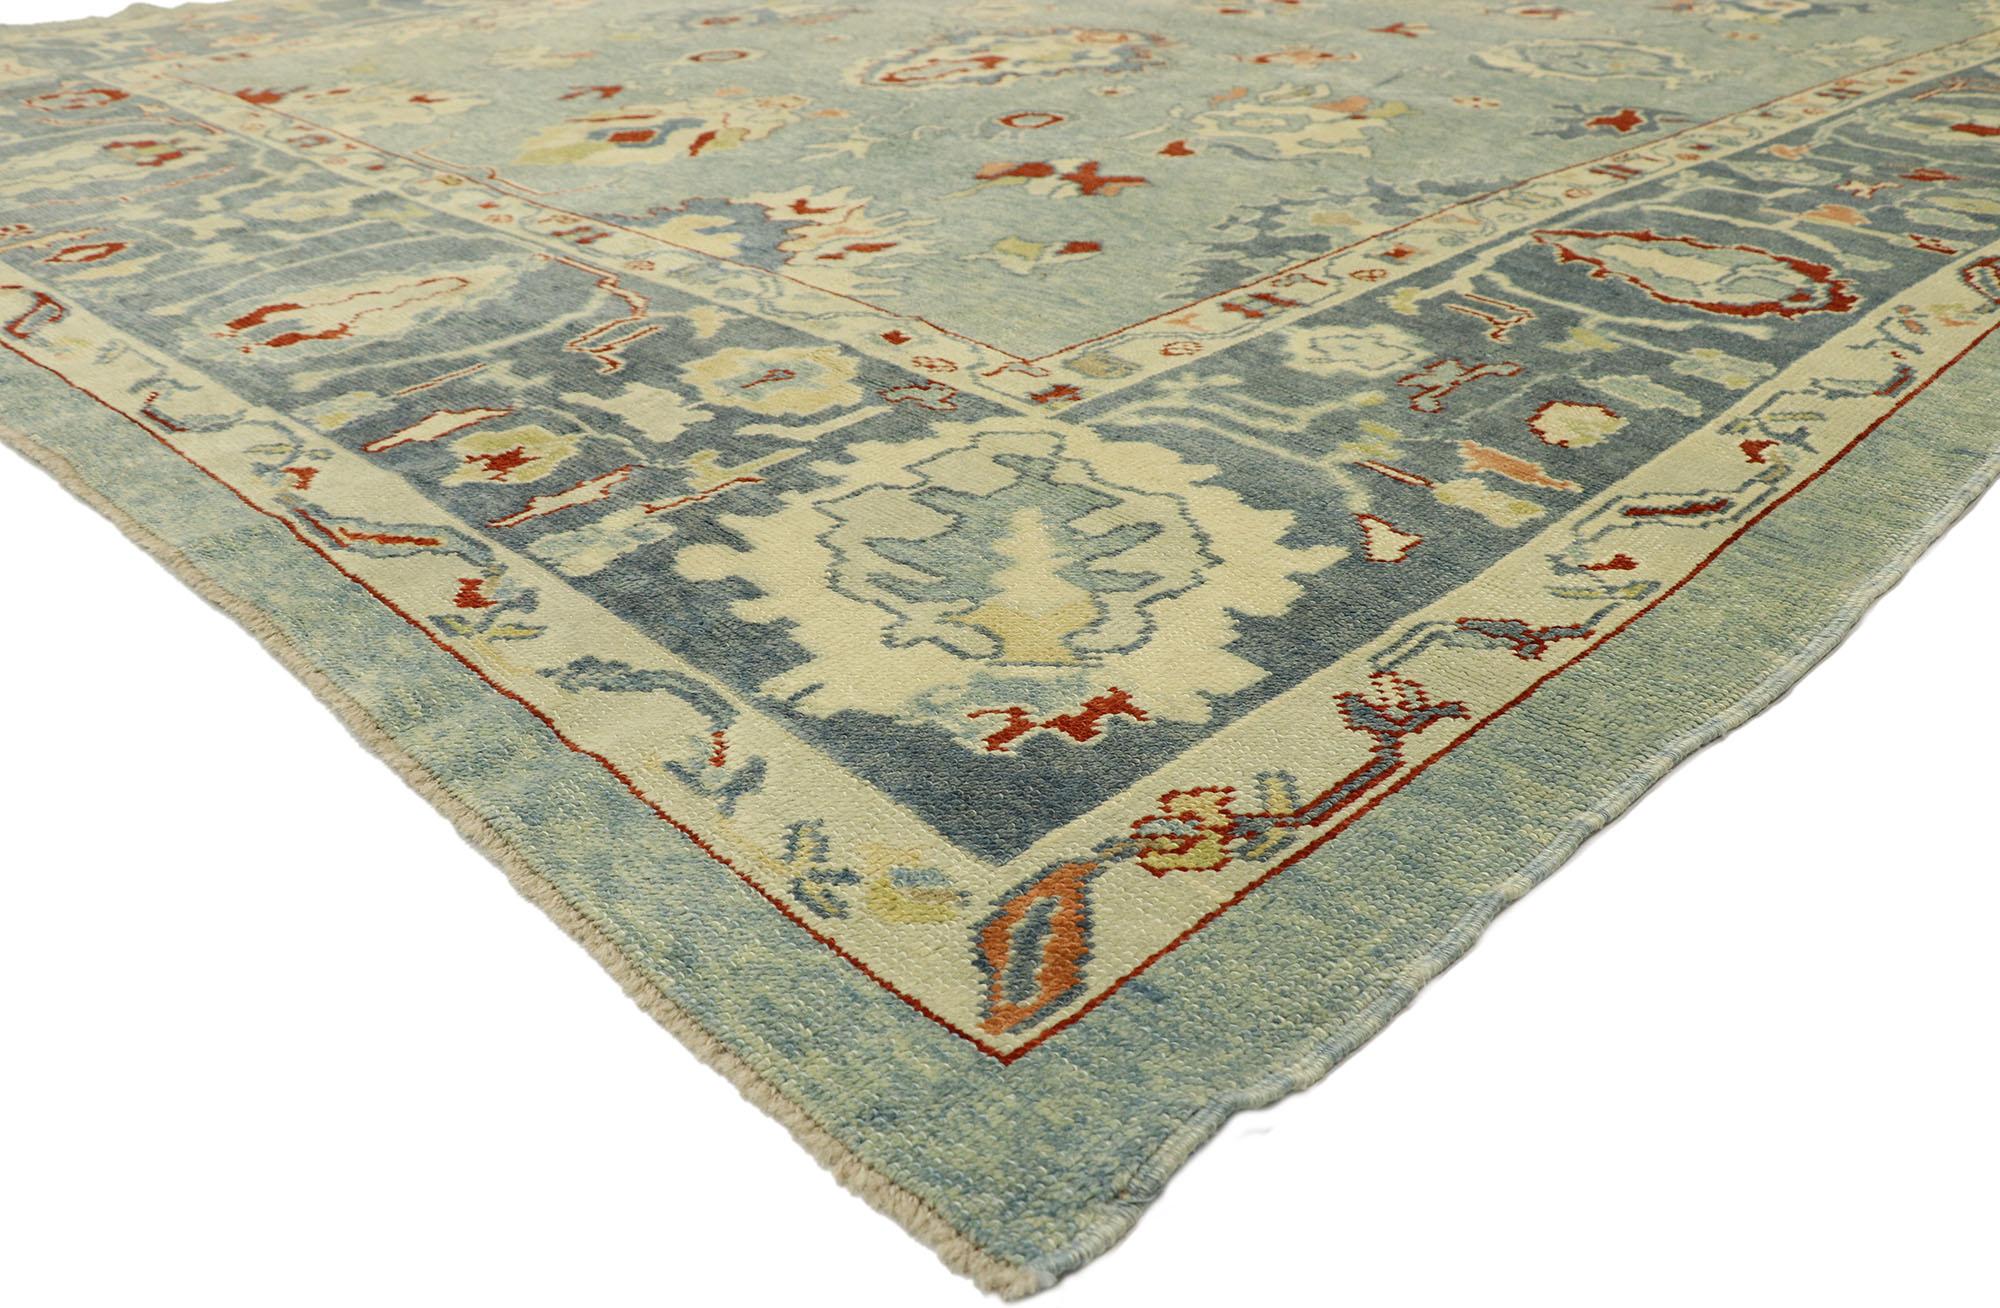 51856 Moderner blauer türkischer Oushak-Teppich, 11'02 x 15'07. Dieser moderne türkische Oushak-Teppich aus handgeknüpfter Wolle ist eine harmonische Verschmelzung von Küstenstil und zeitgenössischen Einflüssen und verbindet nahtlos das Alte mit dem